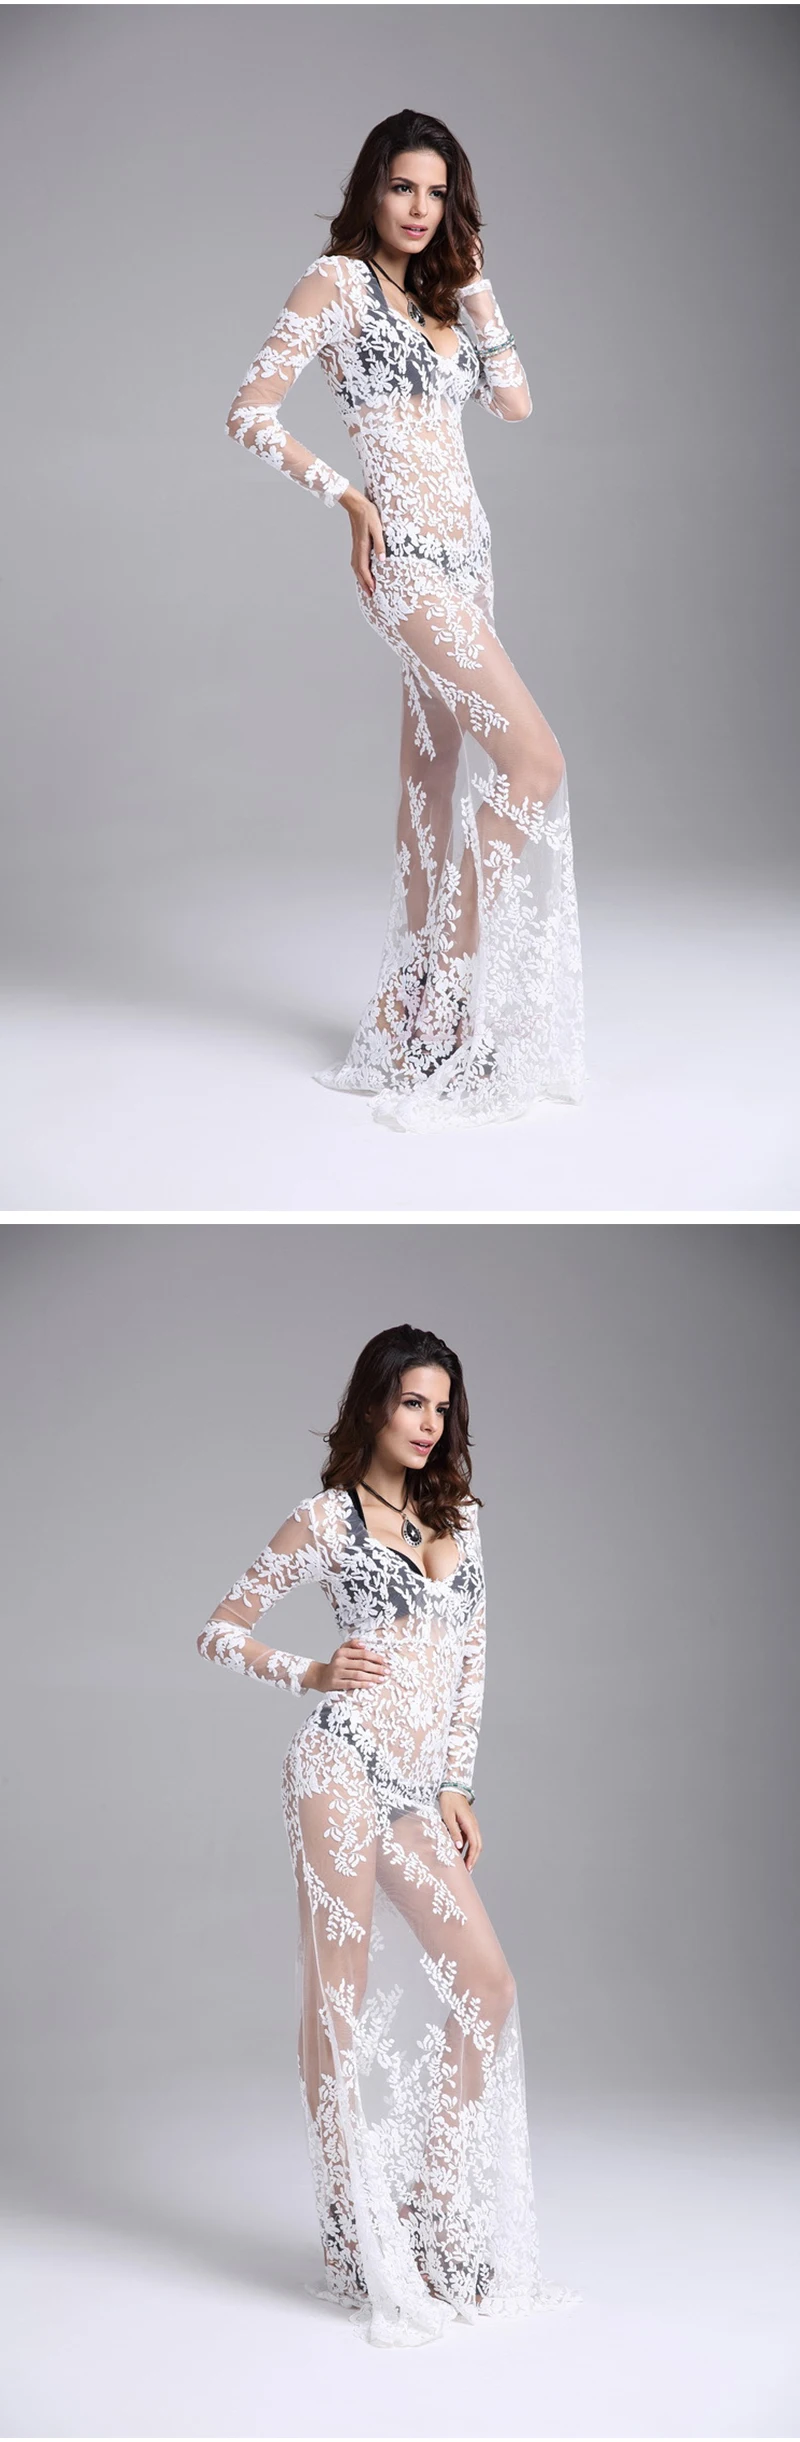 Lurehooker 2018 для женщин сексуальное женское белье Горячая косплэй Белый невесты свадебное платье форма вышивка кружево Ночная рубашка